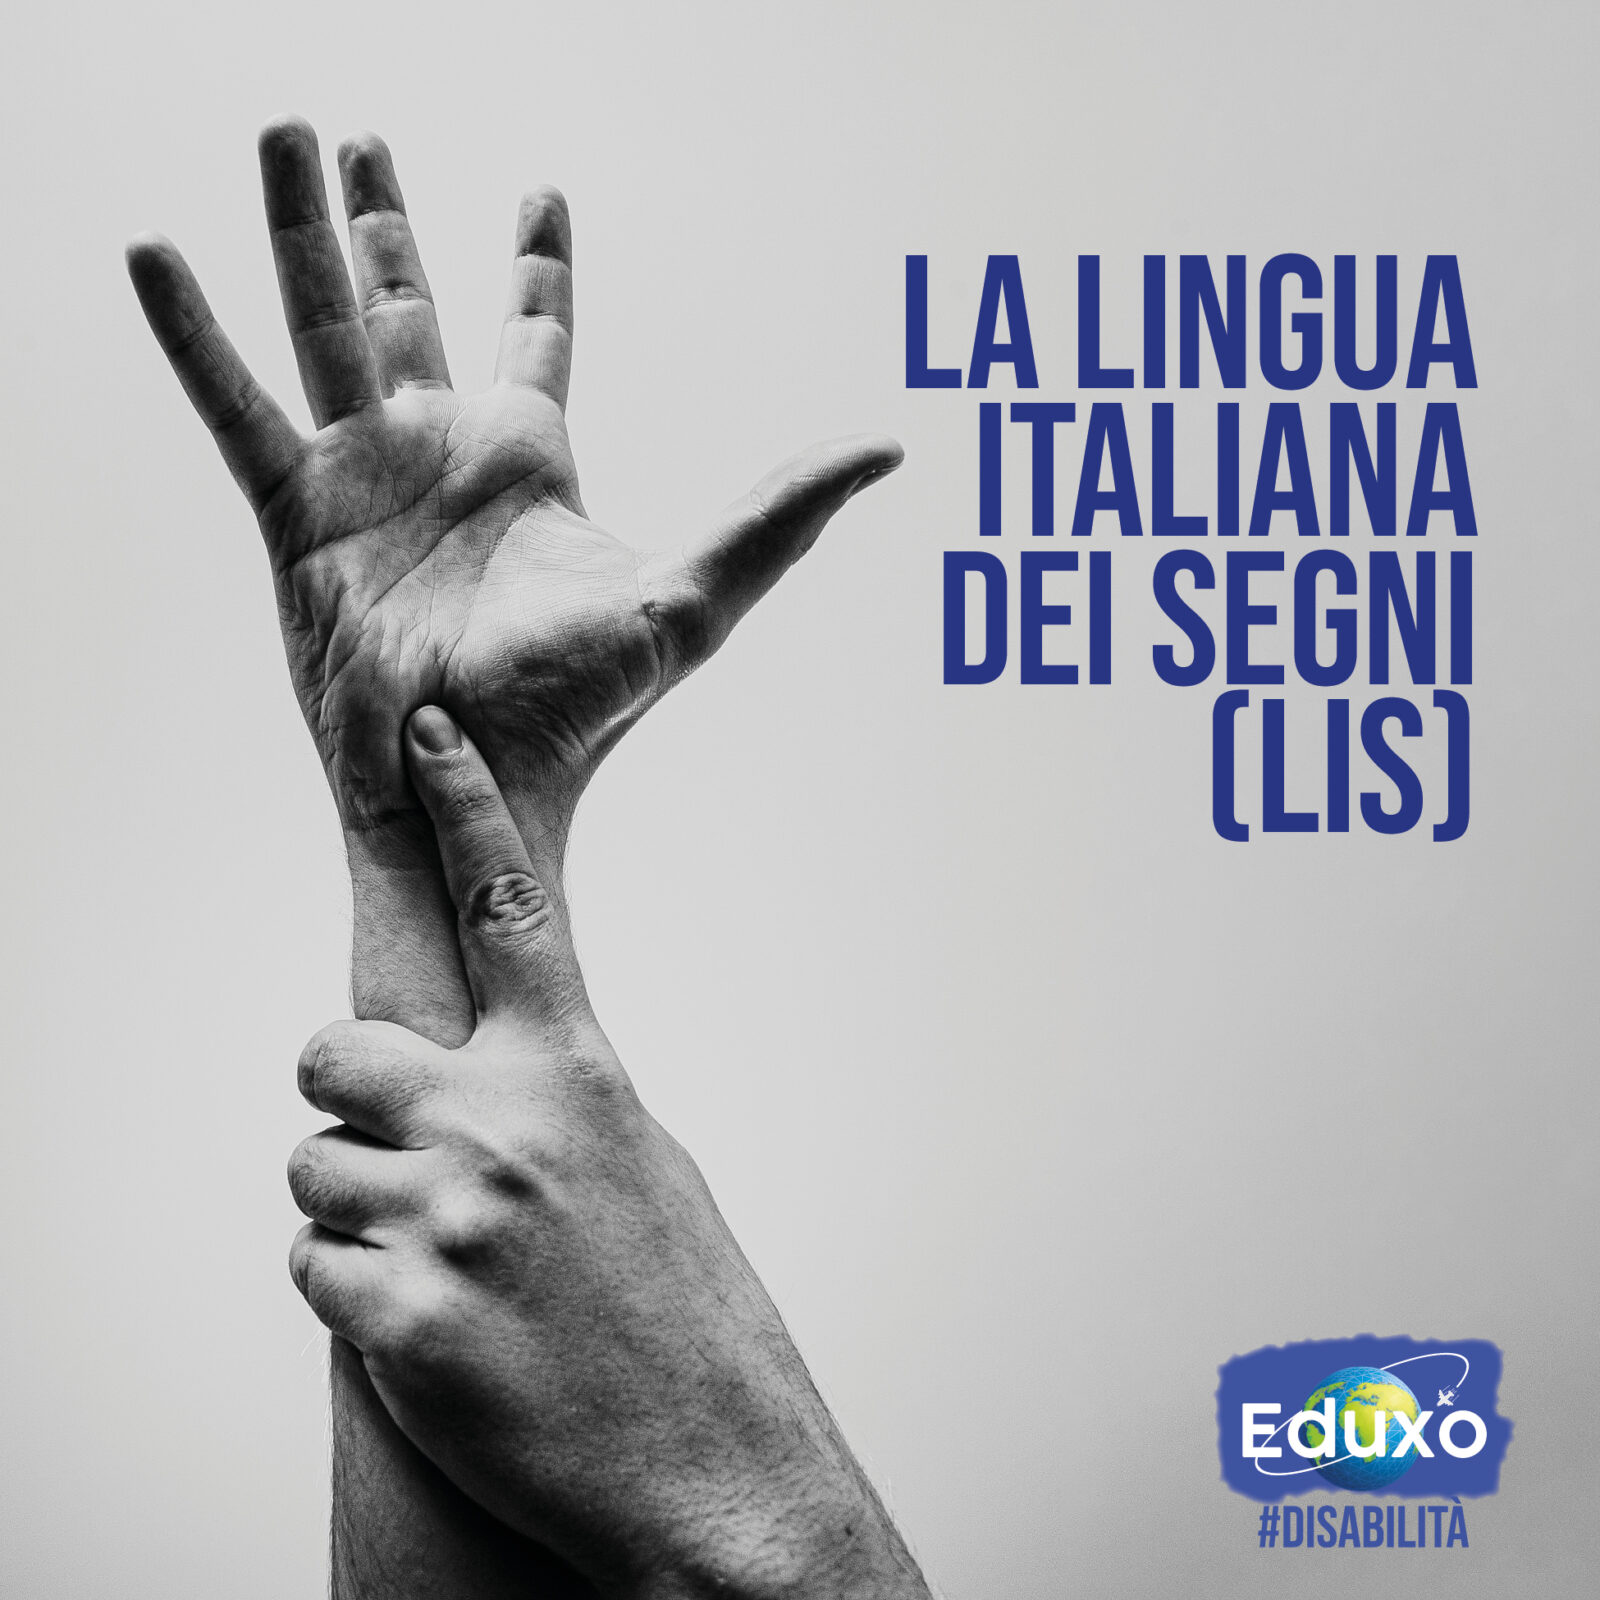 You are currently viewing La lingua italiana dei segni